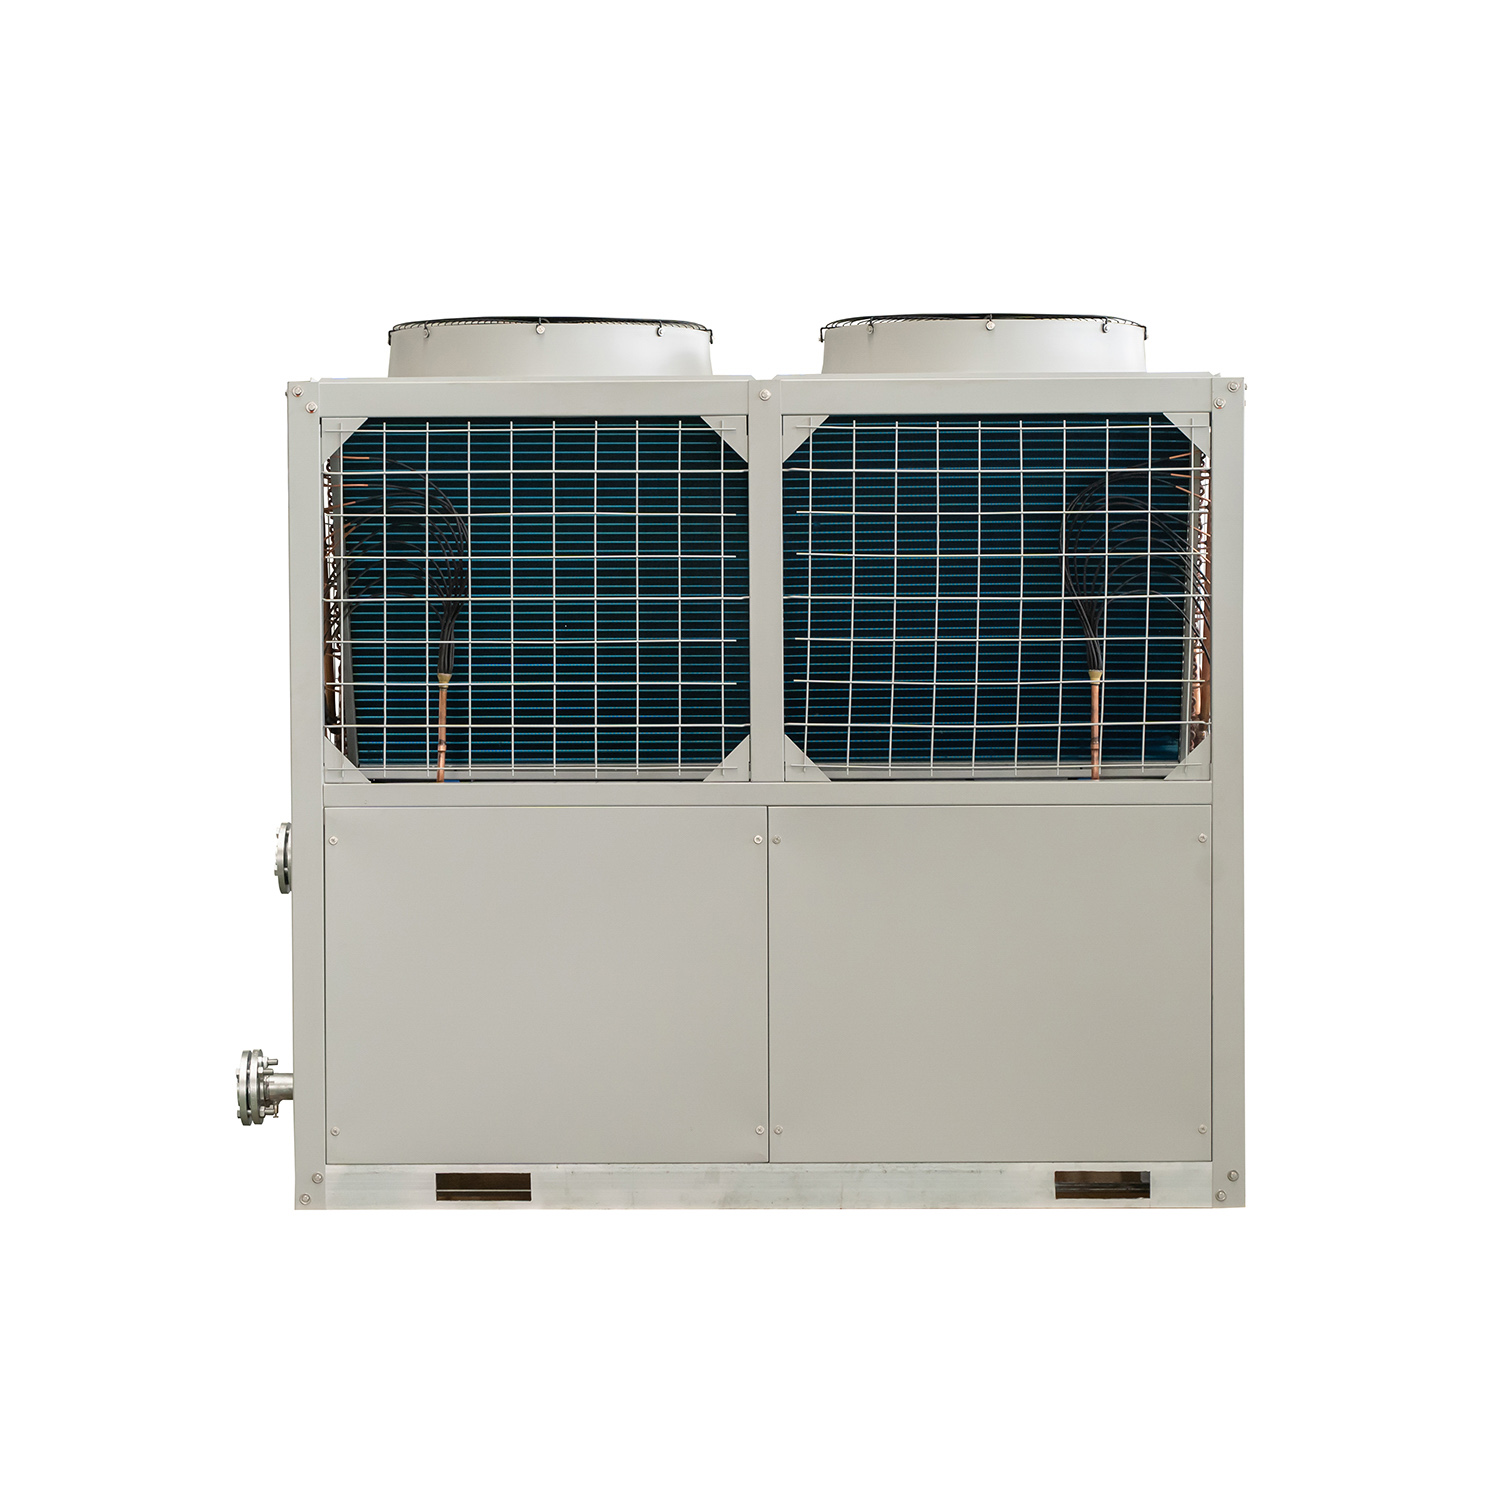 75-kW-modulare Industriekühler mit luftgekühlten Wasserkühlern in Spiralform